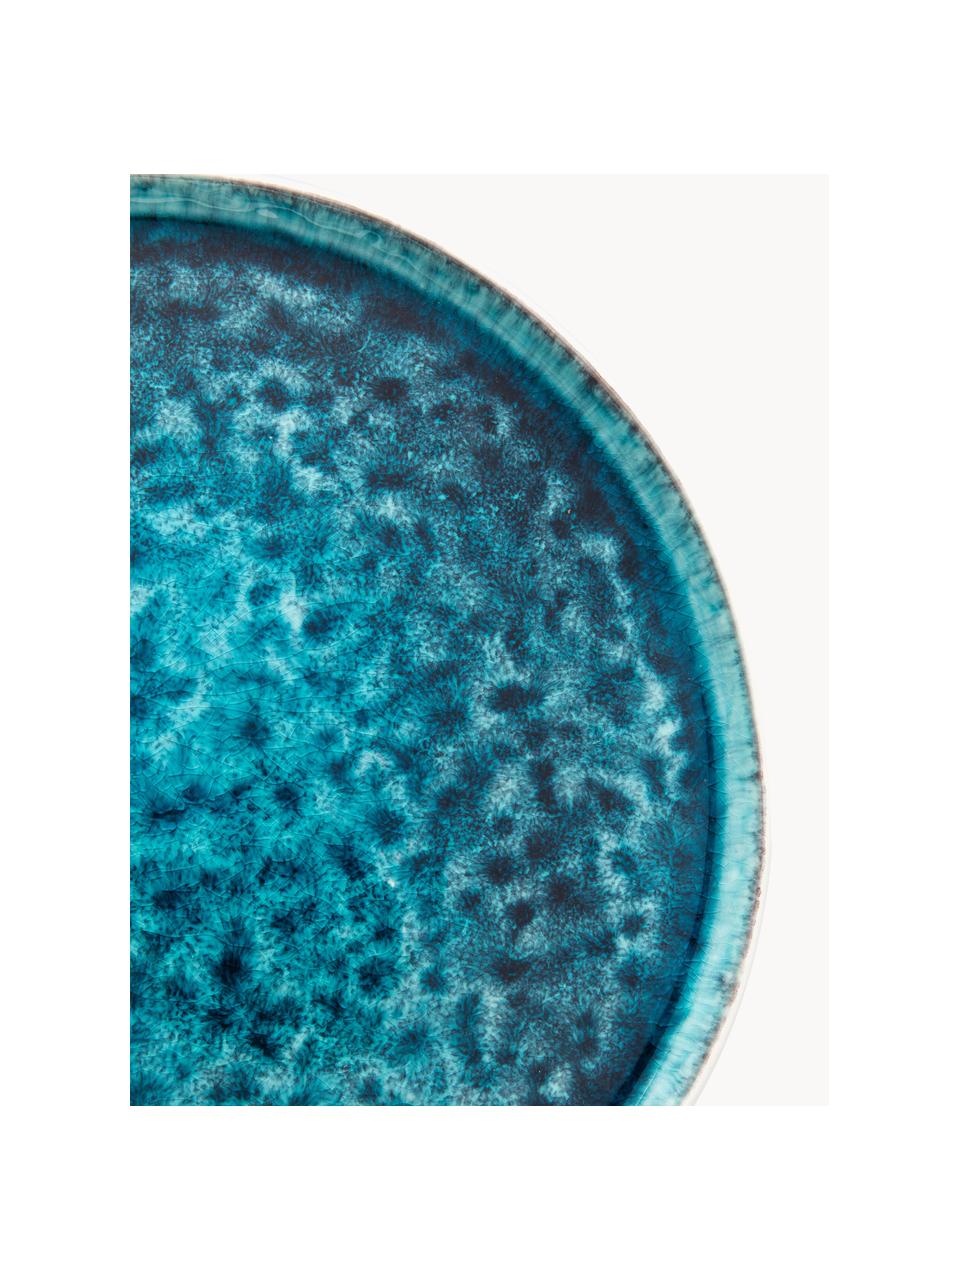 Platos llanos artesanales Mustique, 4 uds., Cerámica de gres esmaltada, Turquesa, azul oscuro, Ø 27 cm